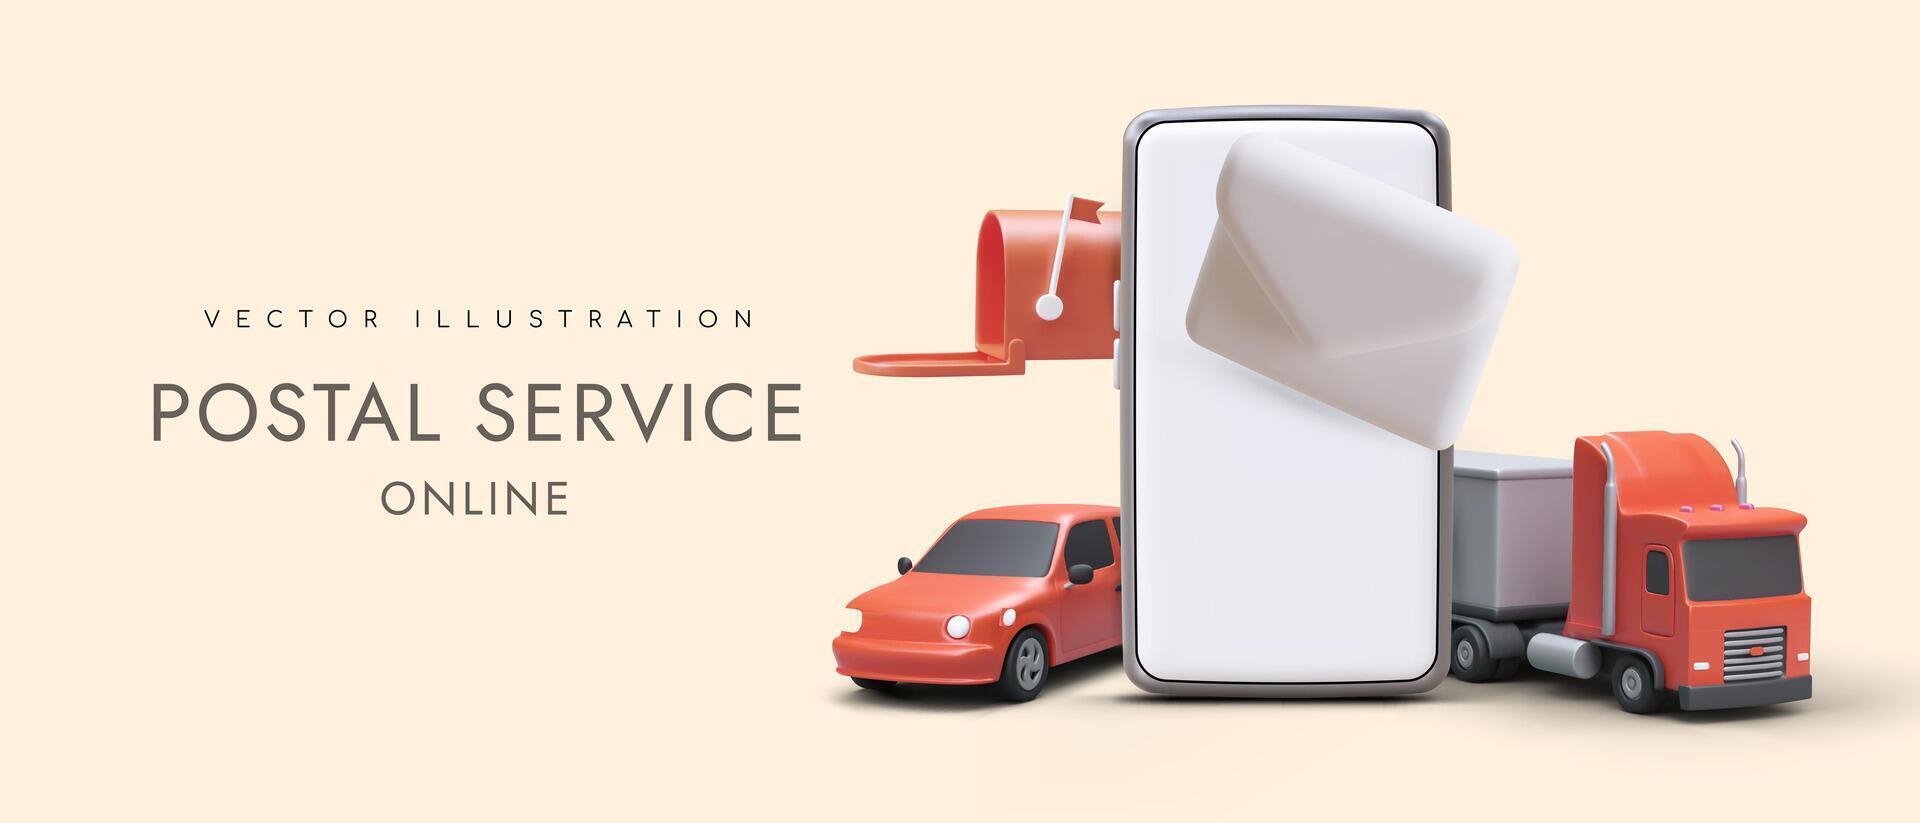 réaliste 3d téléphone intelligent, automobiles, boites aux lettres et lettre. en ligne livraison commande concept vecteur